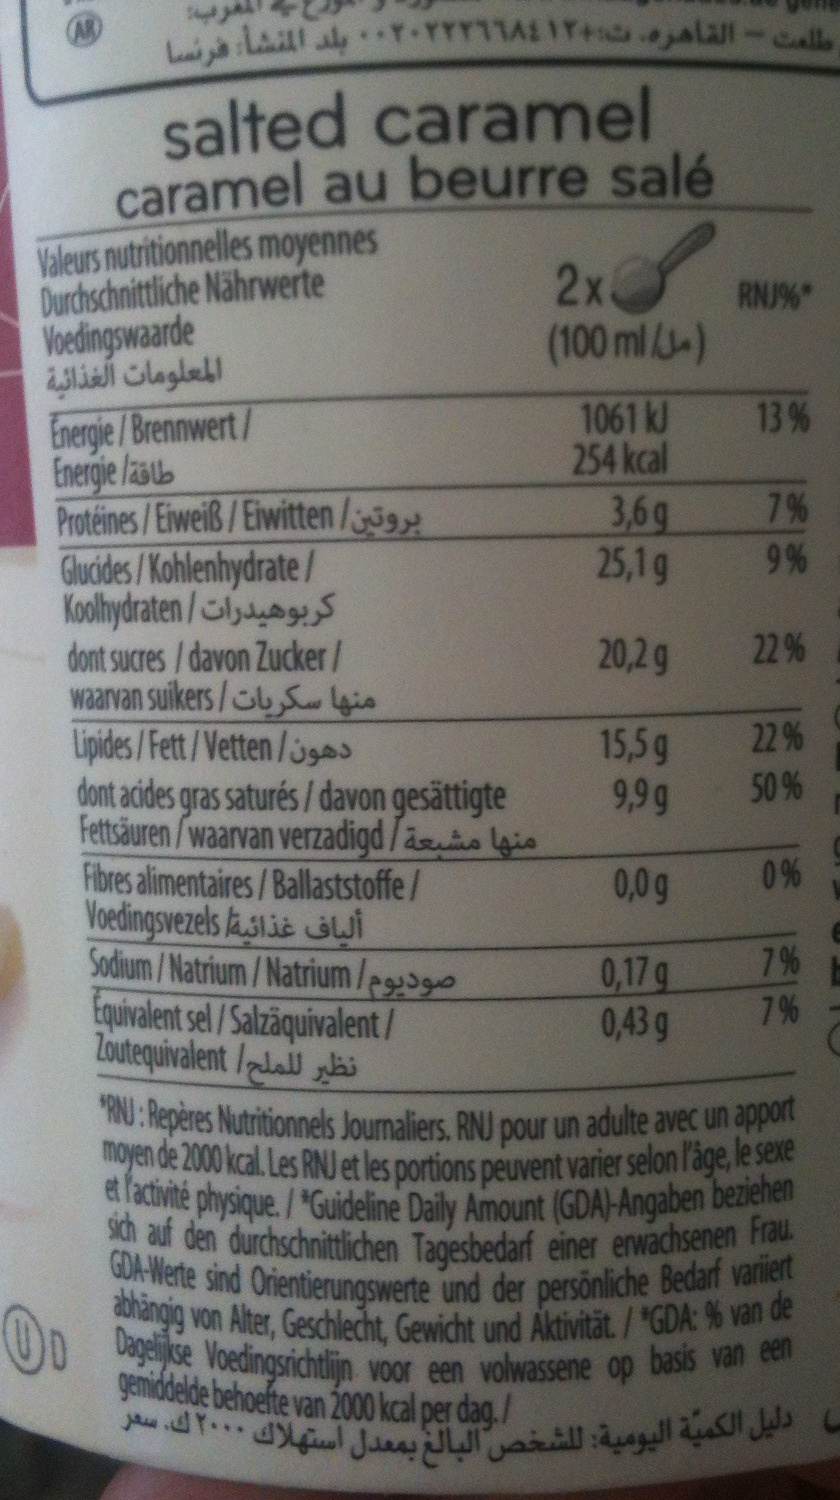 Häagen-Dazs - Salted Caramel (Caramel au beurre salé) - Tableau nutritionnel